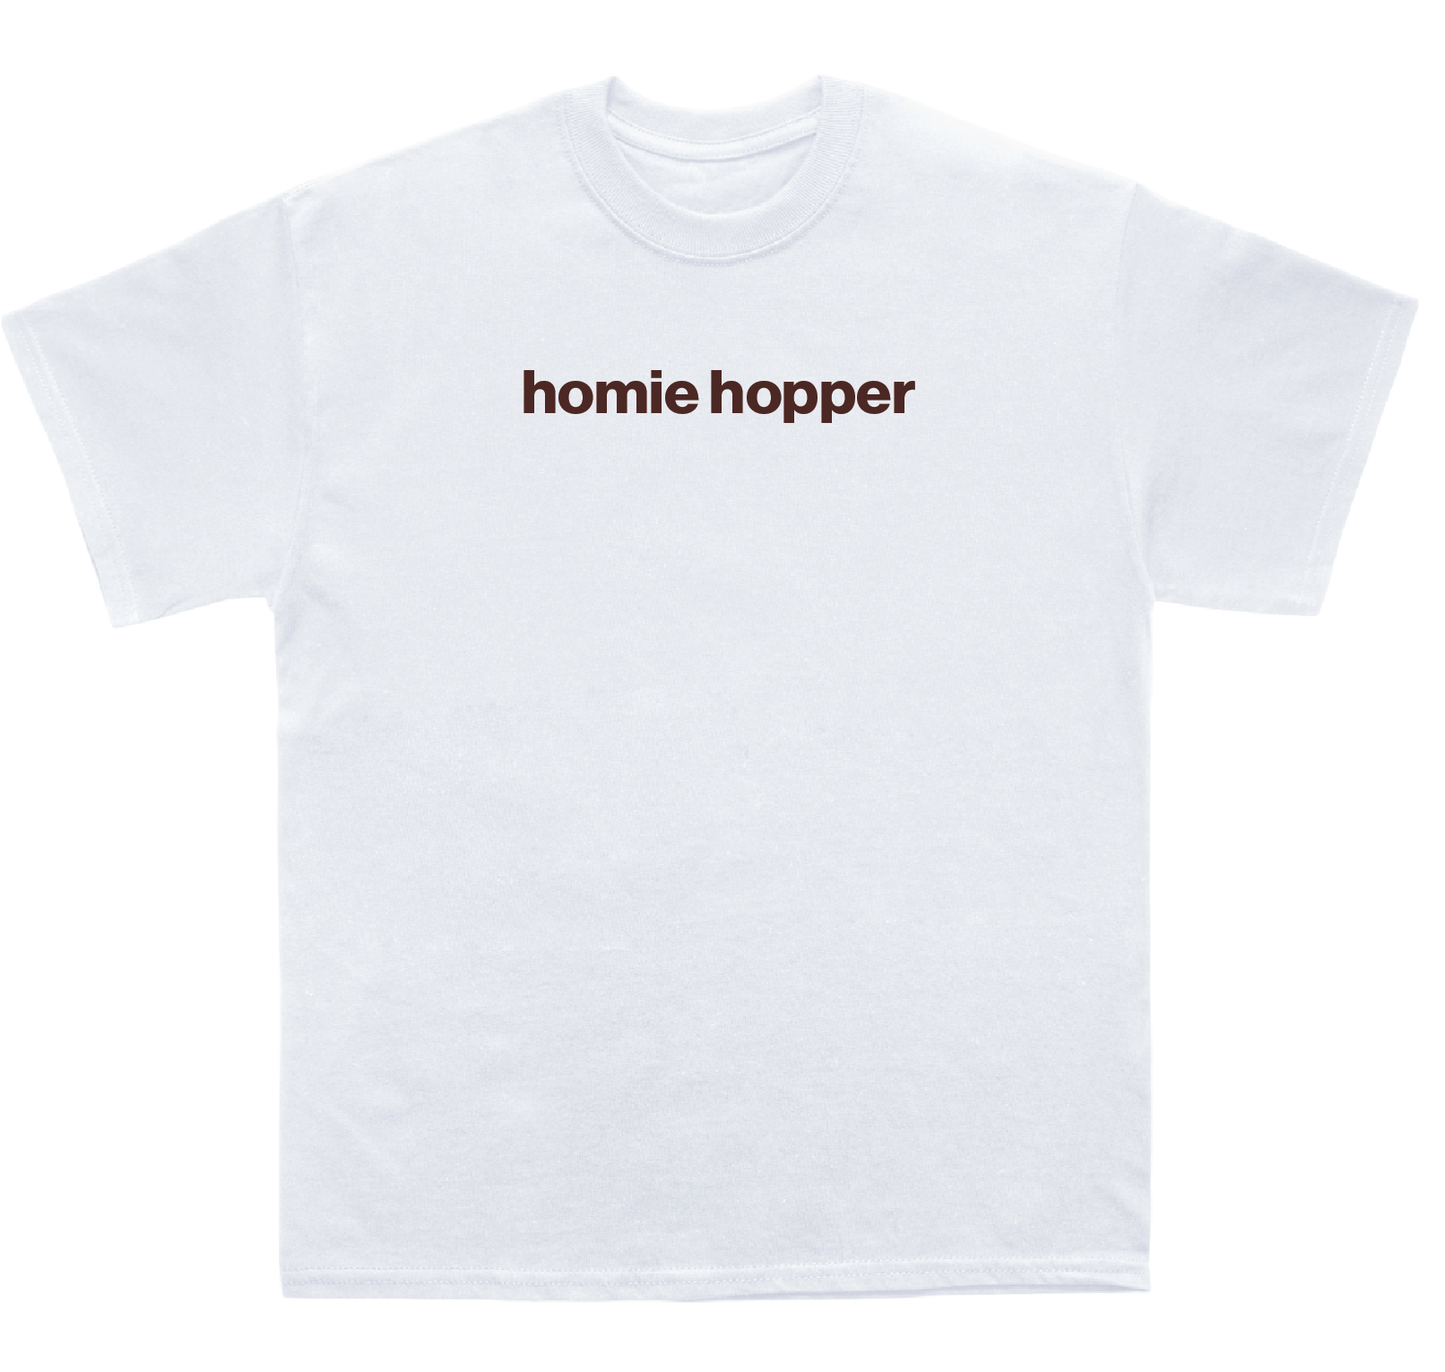 homie hopper shirt